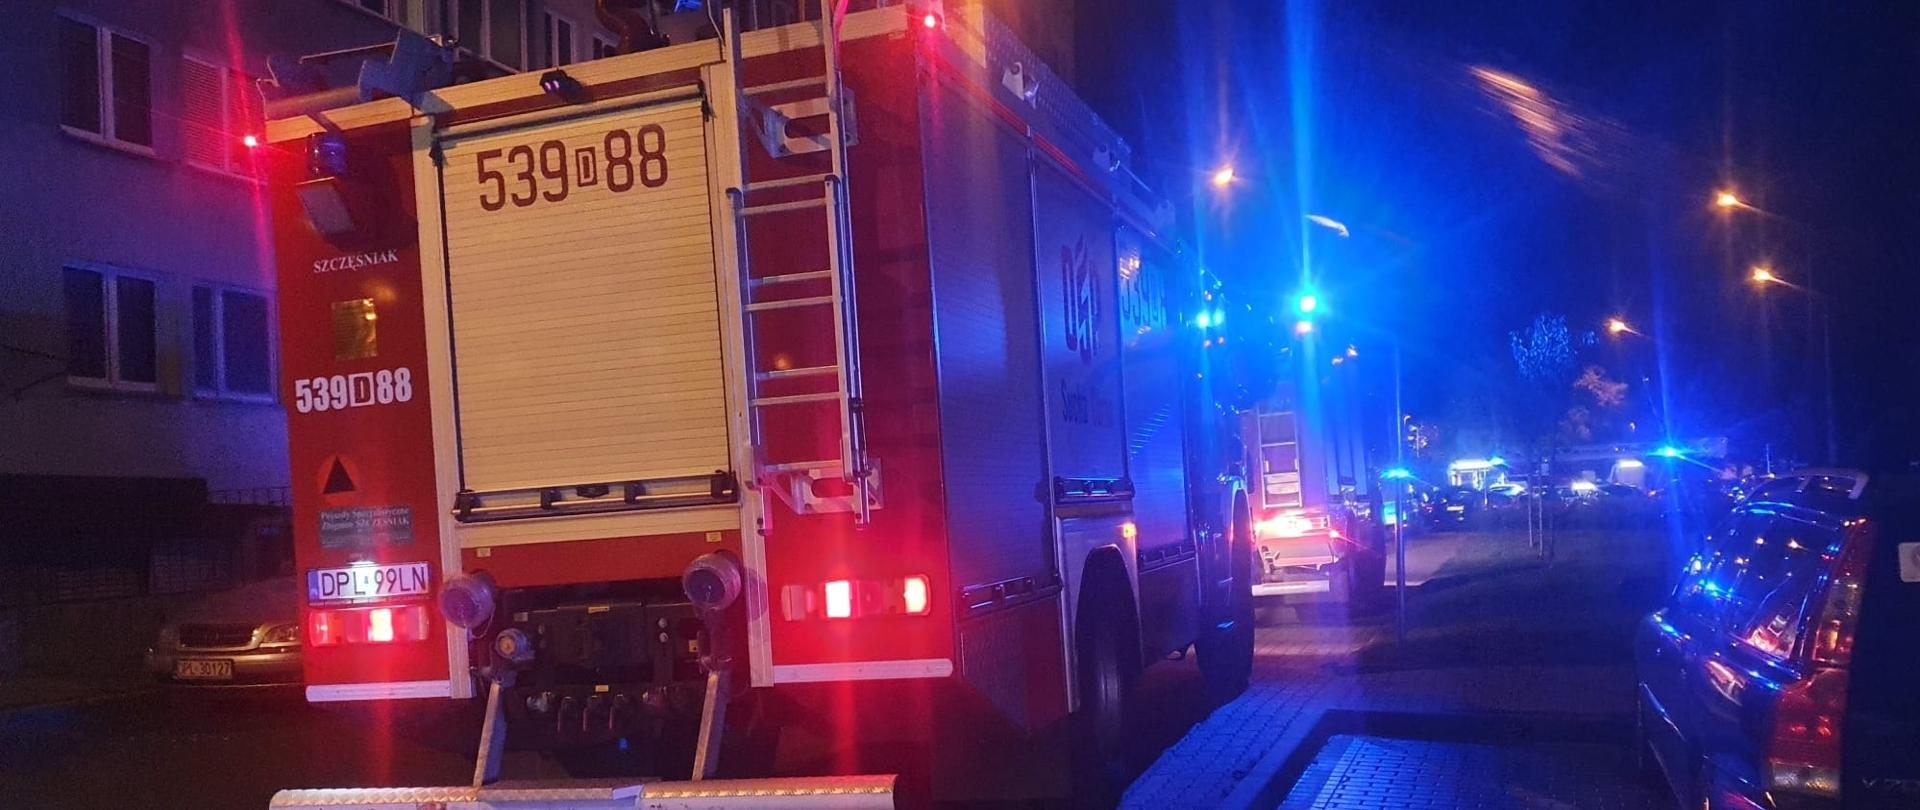 Auto strażackie na sygnałach stoi koło budynku mieszkalnego w nocy